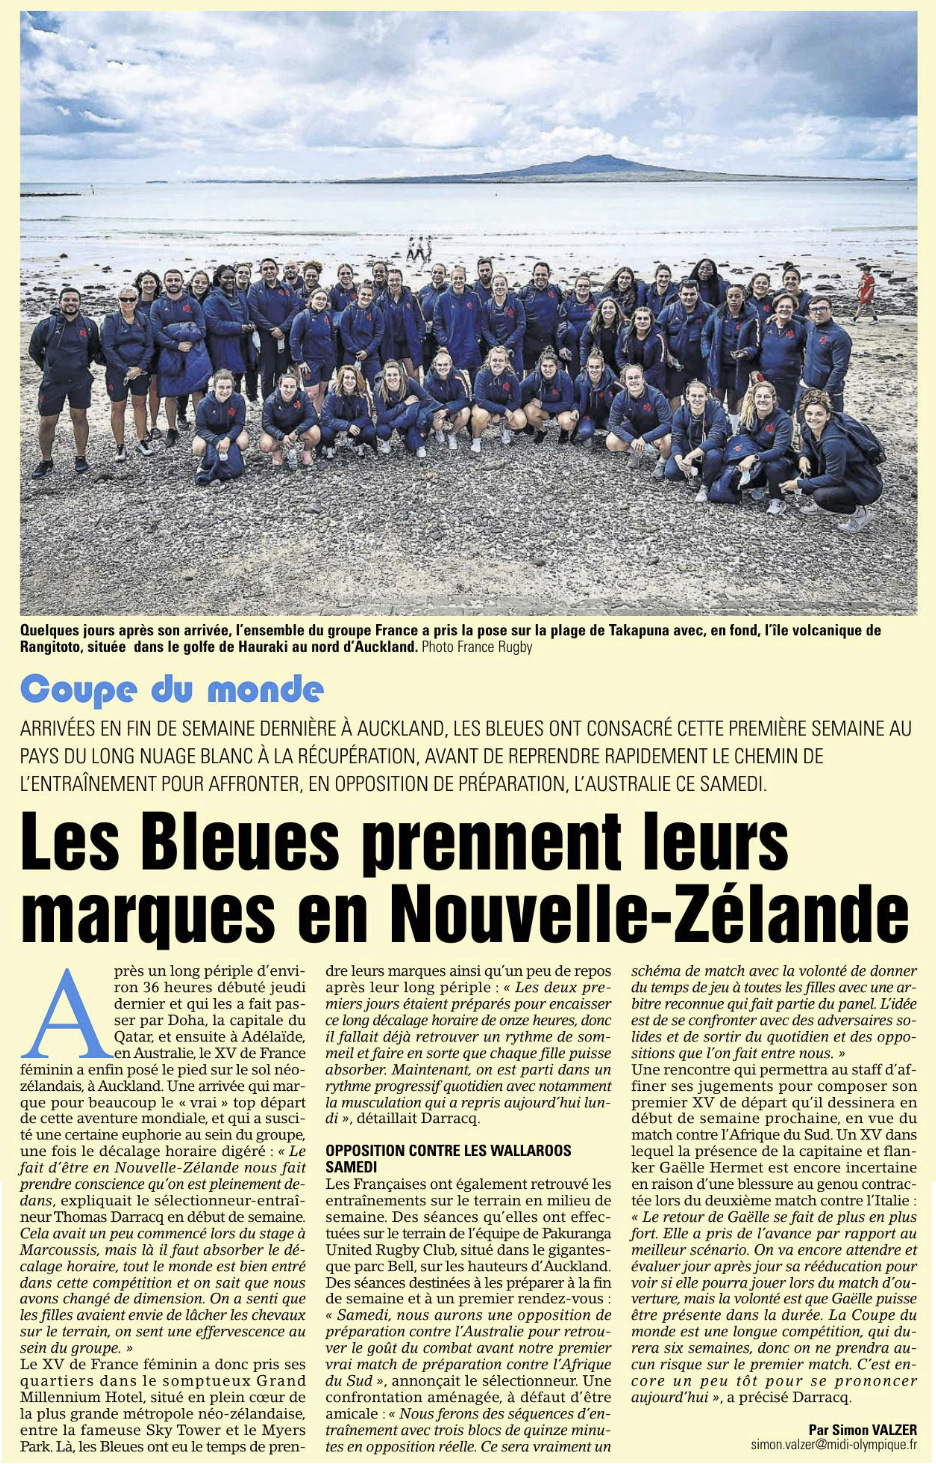 Coupe du monde de Rugby féminine 2021 du XV de France - Page 2 Capt2437